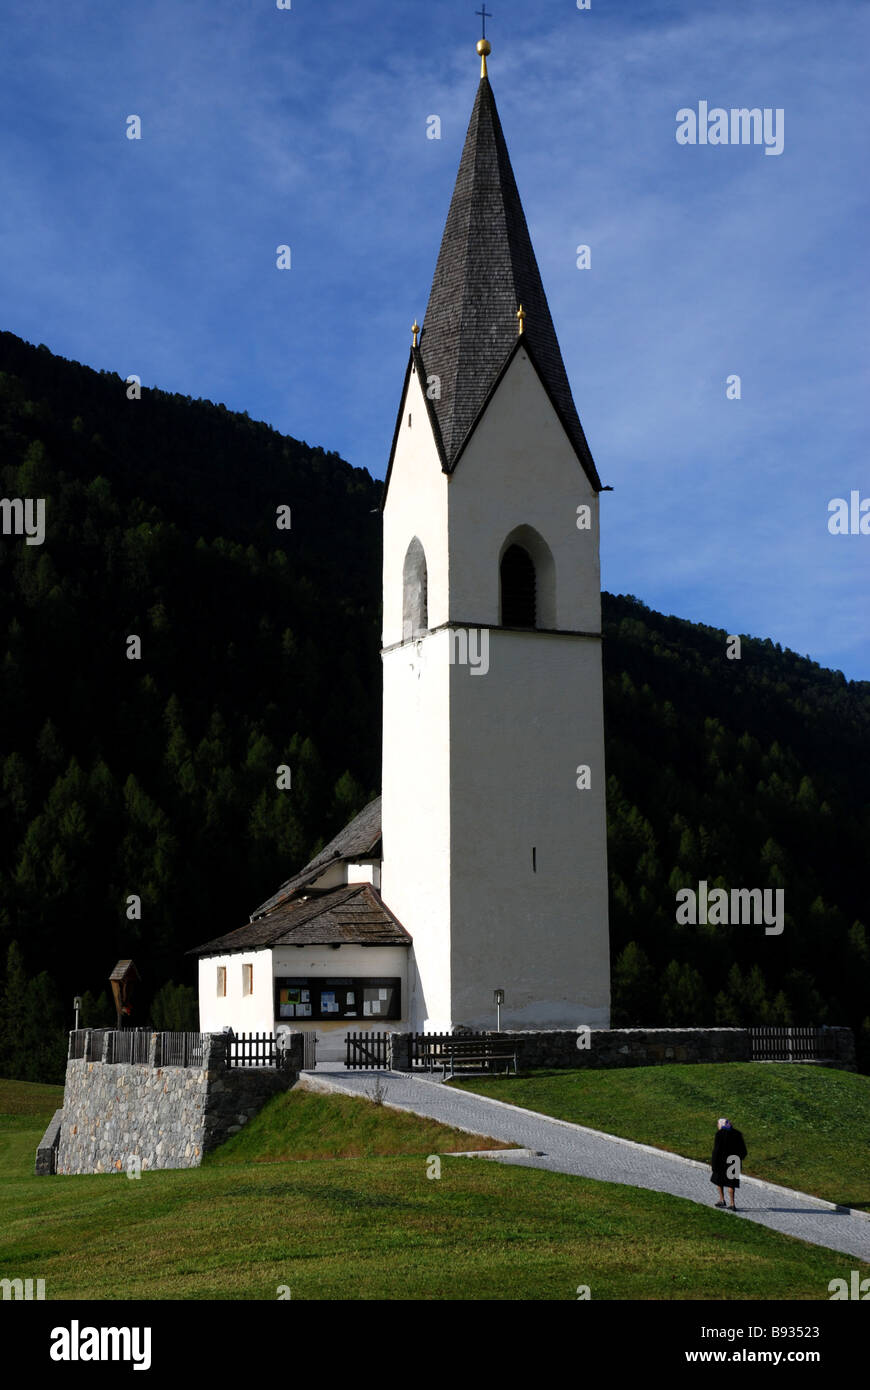 Vieille femme marchant à l'église en Langatauferntal Lanmgtaufernvalley Alpes du Tyrol du sud-Adige Italie Banque D'Images